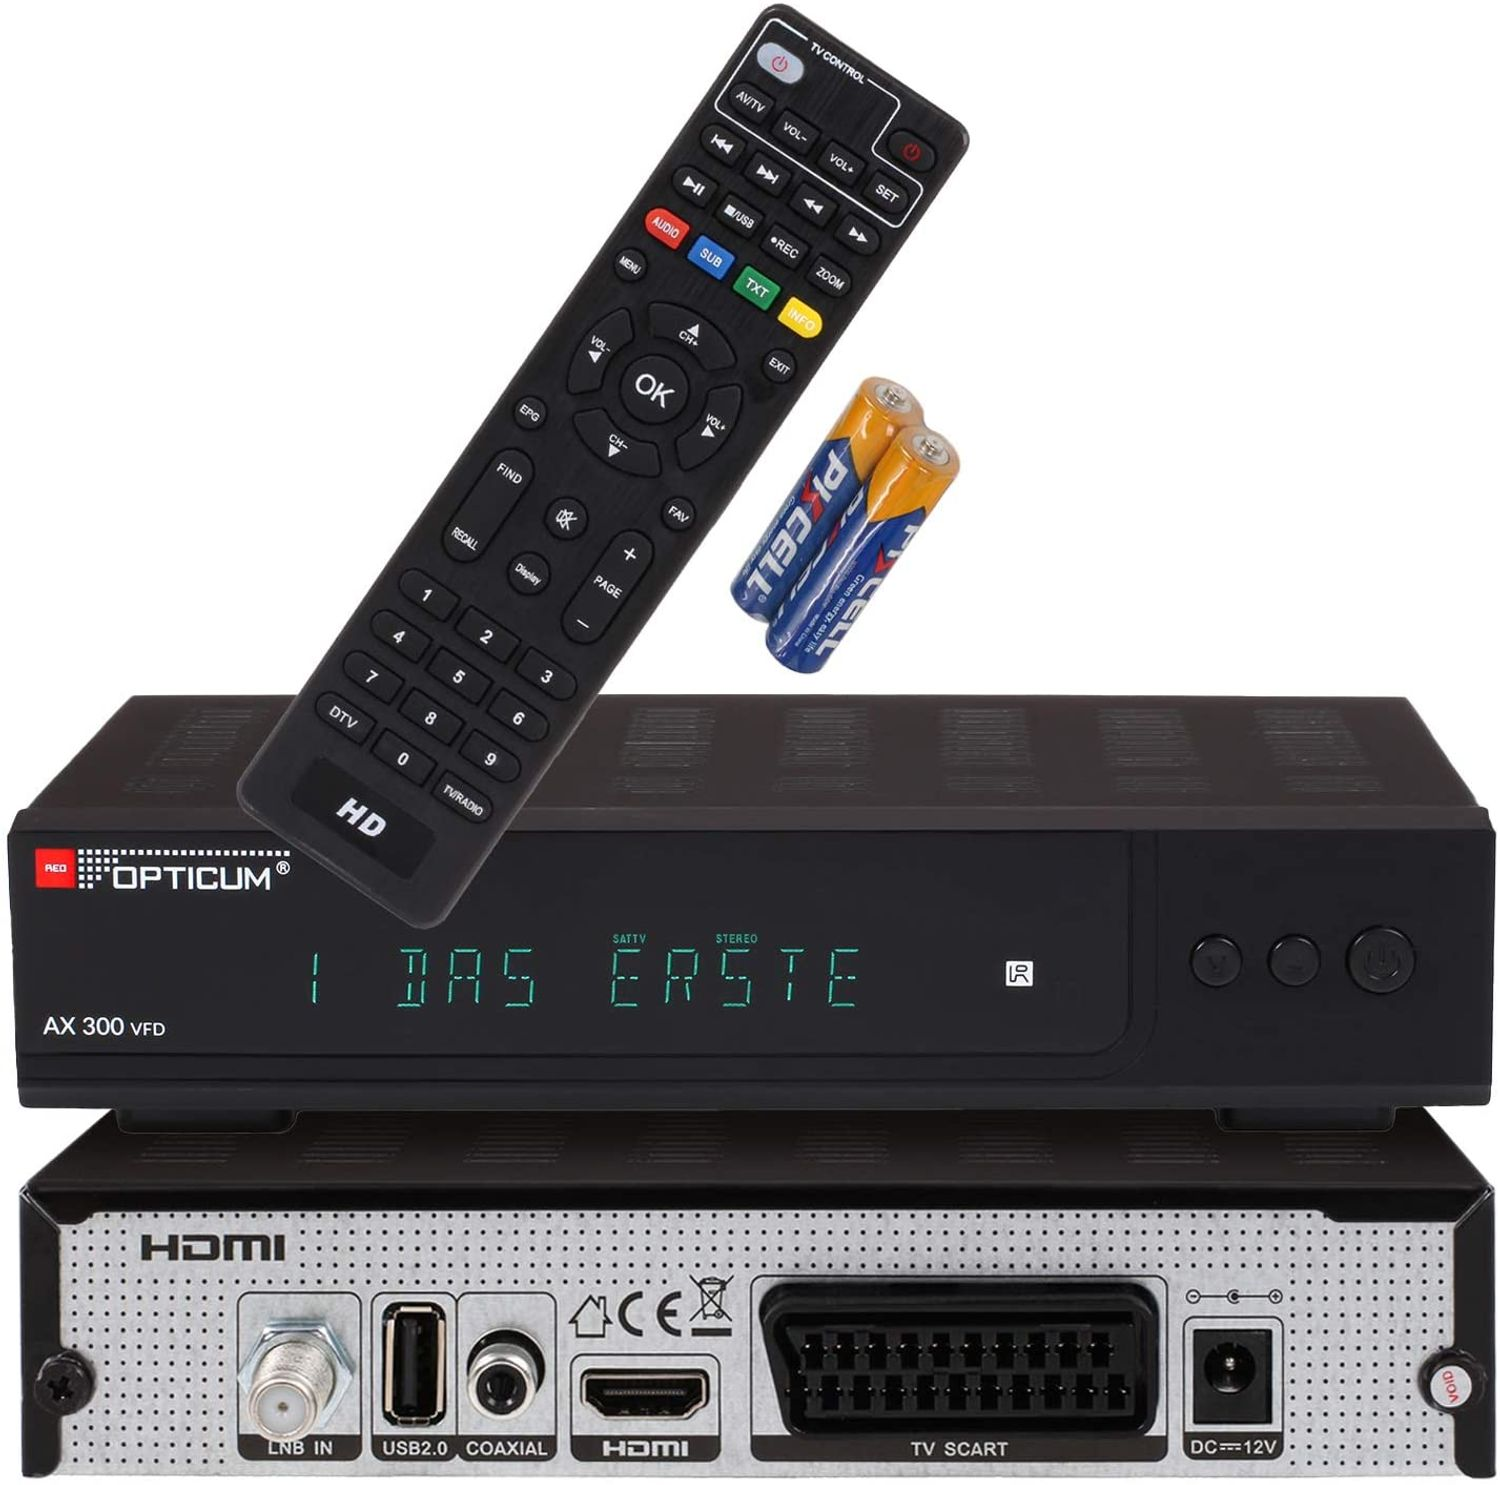 RED DVB-S, mit HD-TV AX I Satelliten-Receiver Sat V Receiver VFD Digitaler DVB-S2, 12 (HDTV, Receiver 300 - OPTICUM DVB-S2 Display schwarz) alphanumerischem